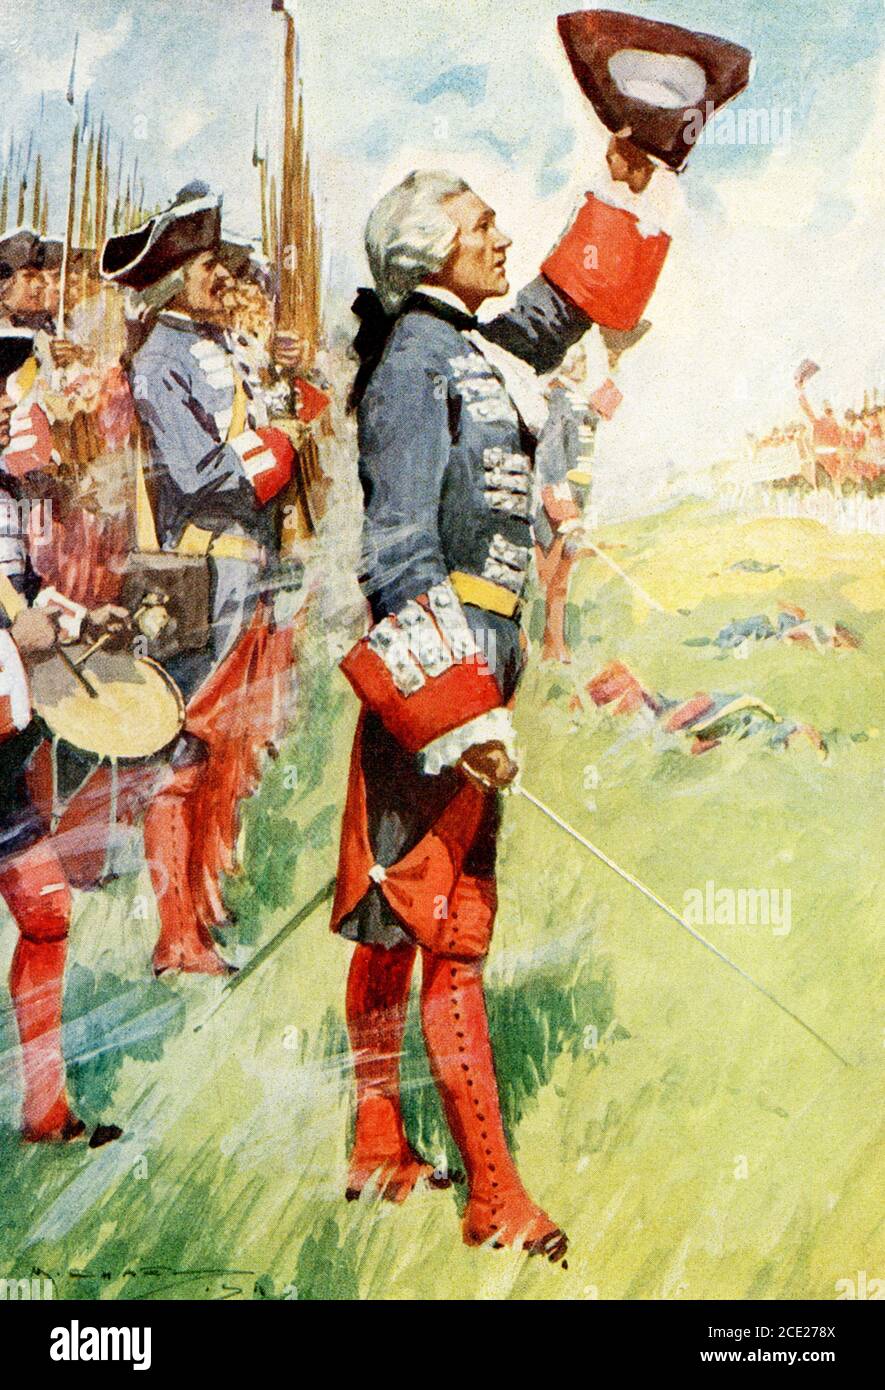 La légende se lit comme suit : pompiers d'Angleterre à l'époque de la bataille de Fontenoy de Louis XV 1745. La bataille de Fontenoy (11 mai 1745) était un engagement majeur de la guerre de succession autrichienne, menée entre les forces des alliés pragmatiques (principalement néerlandais, britannique, Et les troupes hanoveriennes, ainsi qu'un contingent relativement restreint d'Autrichiens sous le commandement du duc de Cumberland) et une armée française sous le commandement du roi Louis XV de France, avec le commandement réel sur le terrain détenu par Maurice de Saxe, commandant des forces de Louis XV dans les pays Bas. Banque D'Images